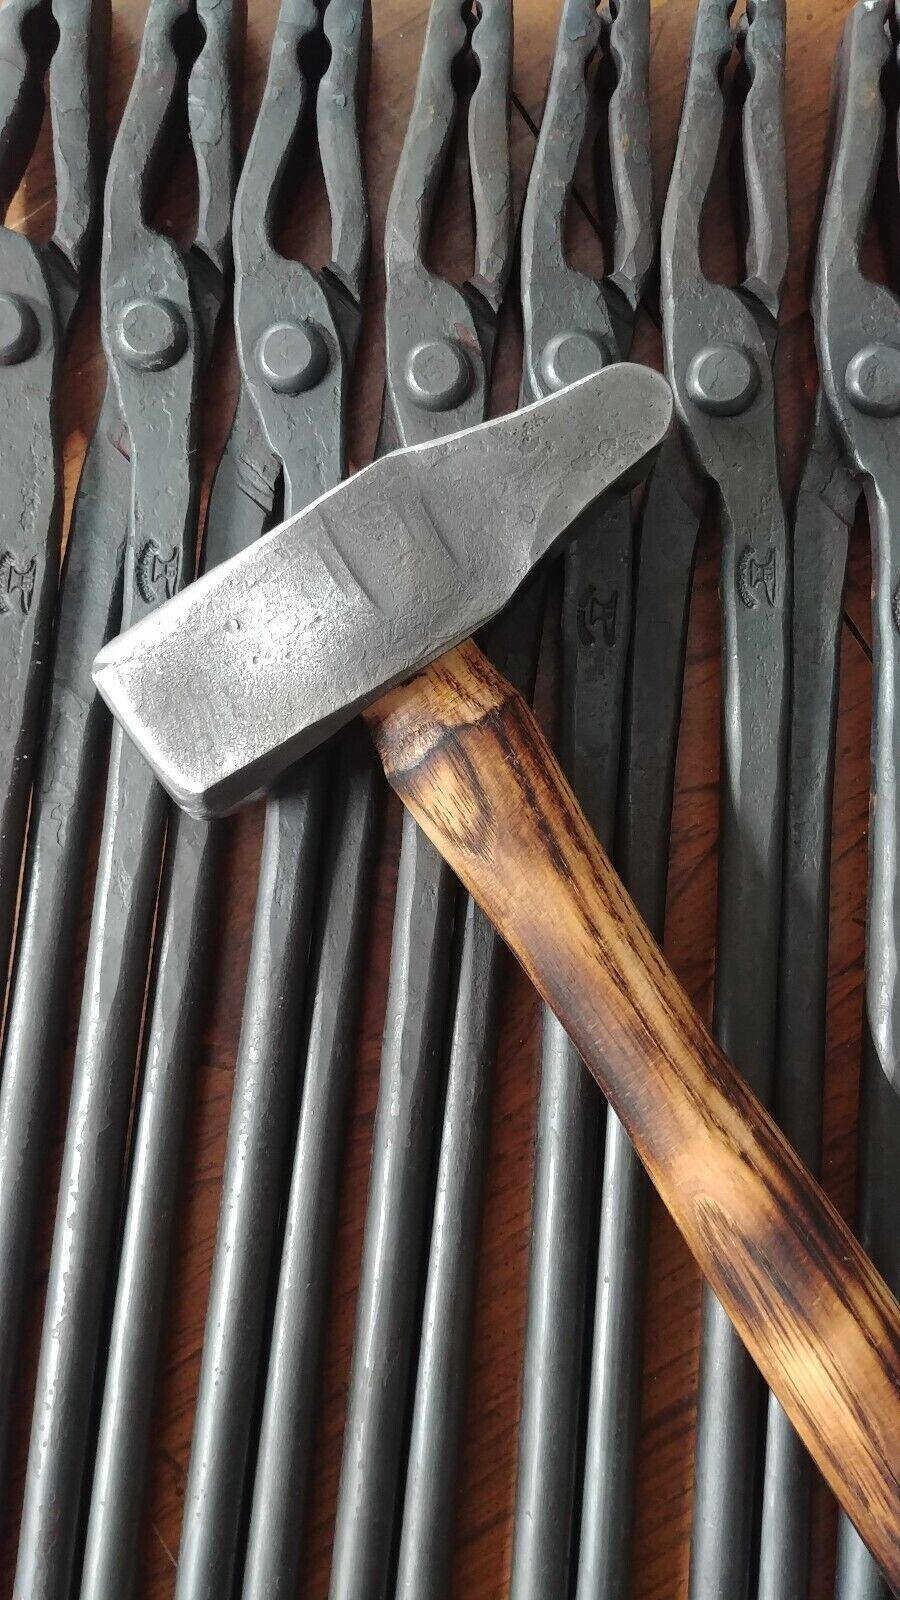 2.5 lb Blacksmith Cross Peen Hammer hand Head/Face Hammers & Mallets hammer